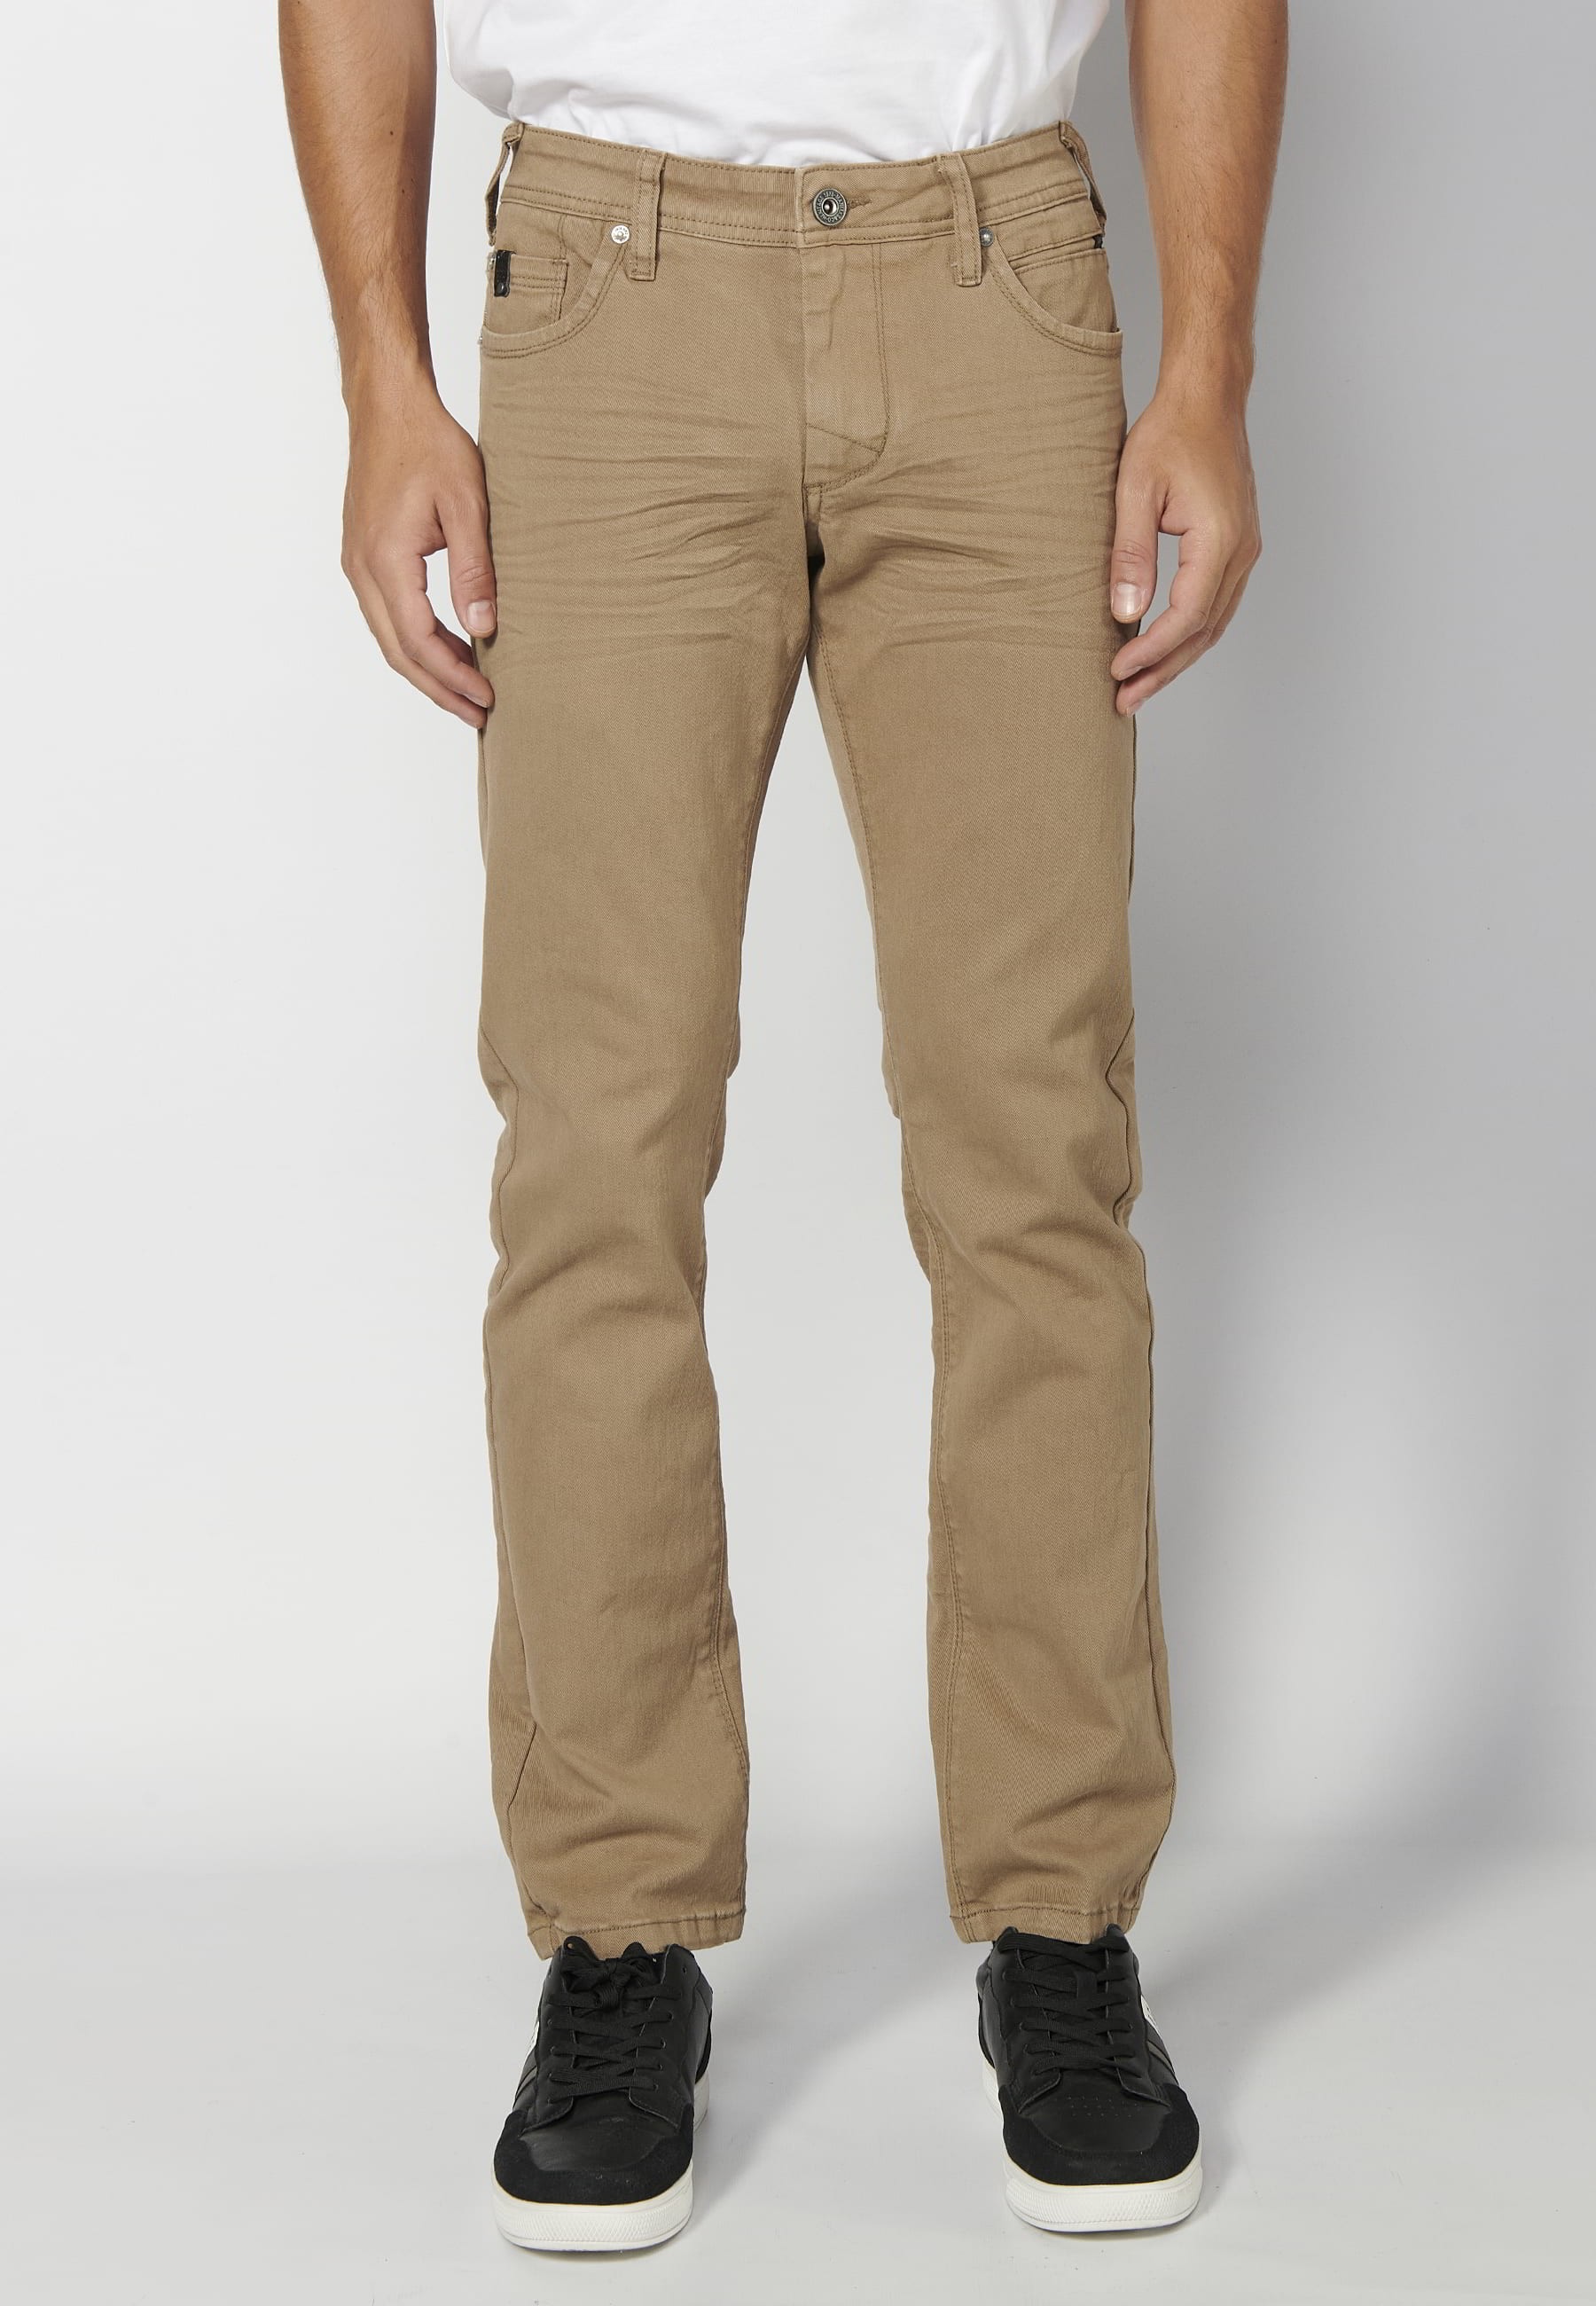 Pantalon long stretch coupe régulière, à cinq poches, couleur Beige, pour Homme 4